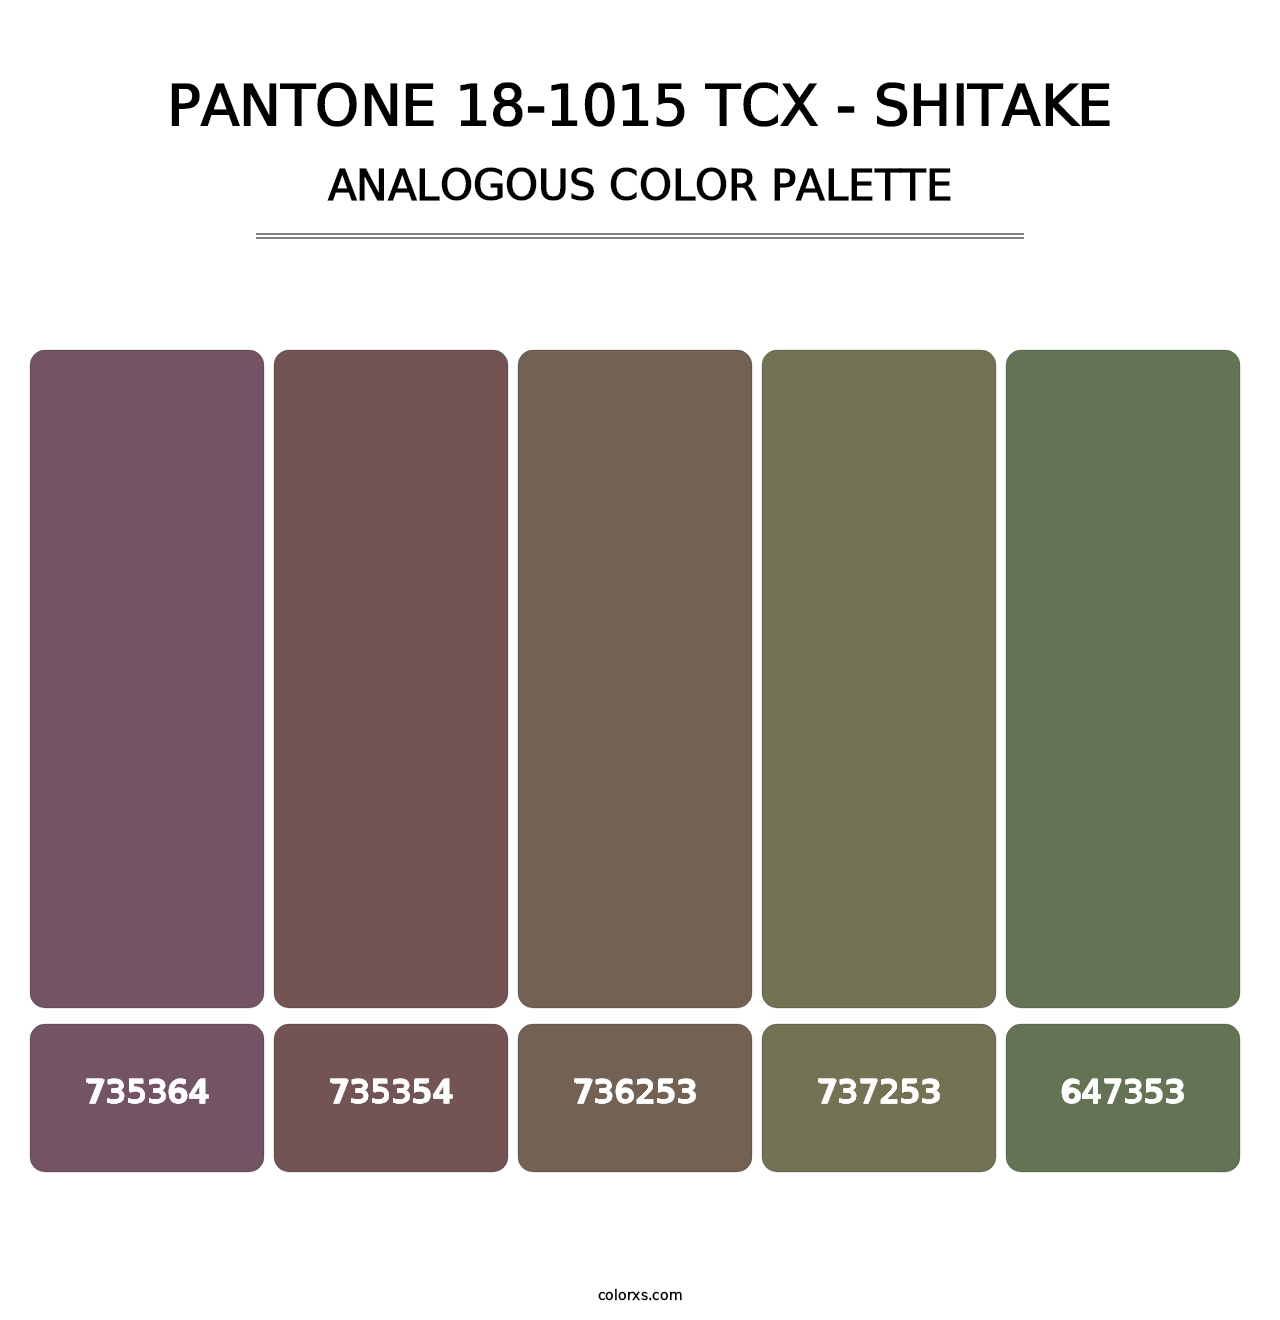 PANTONE 18-1015 TCX - Shitake - Analogous Color Palette